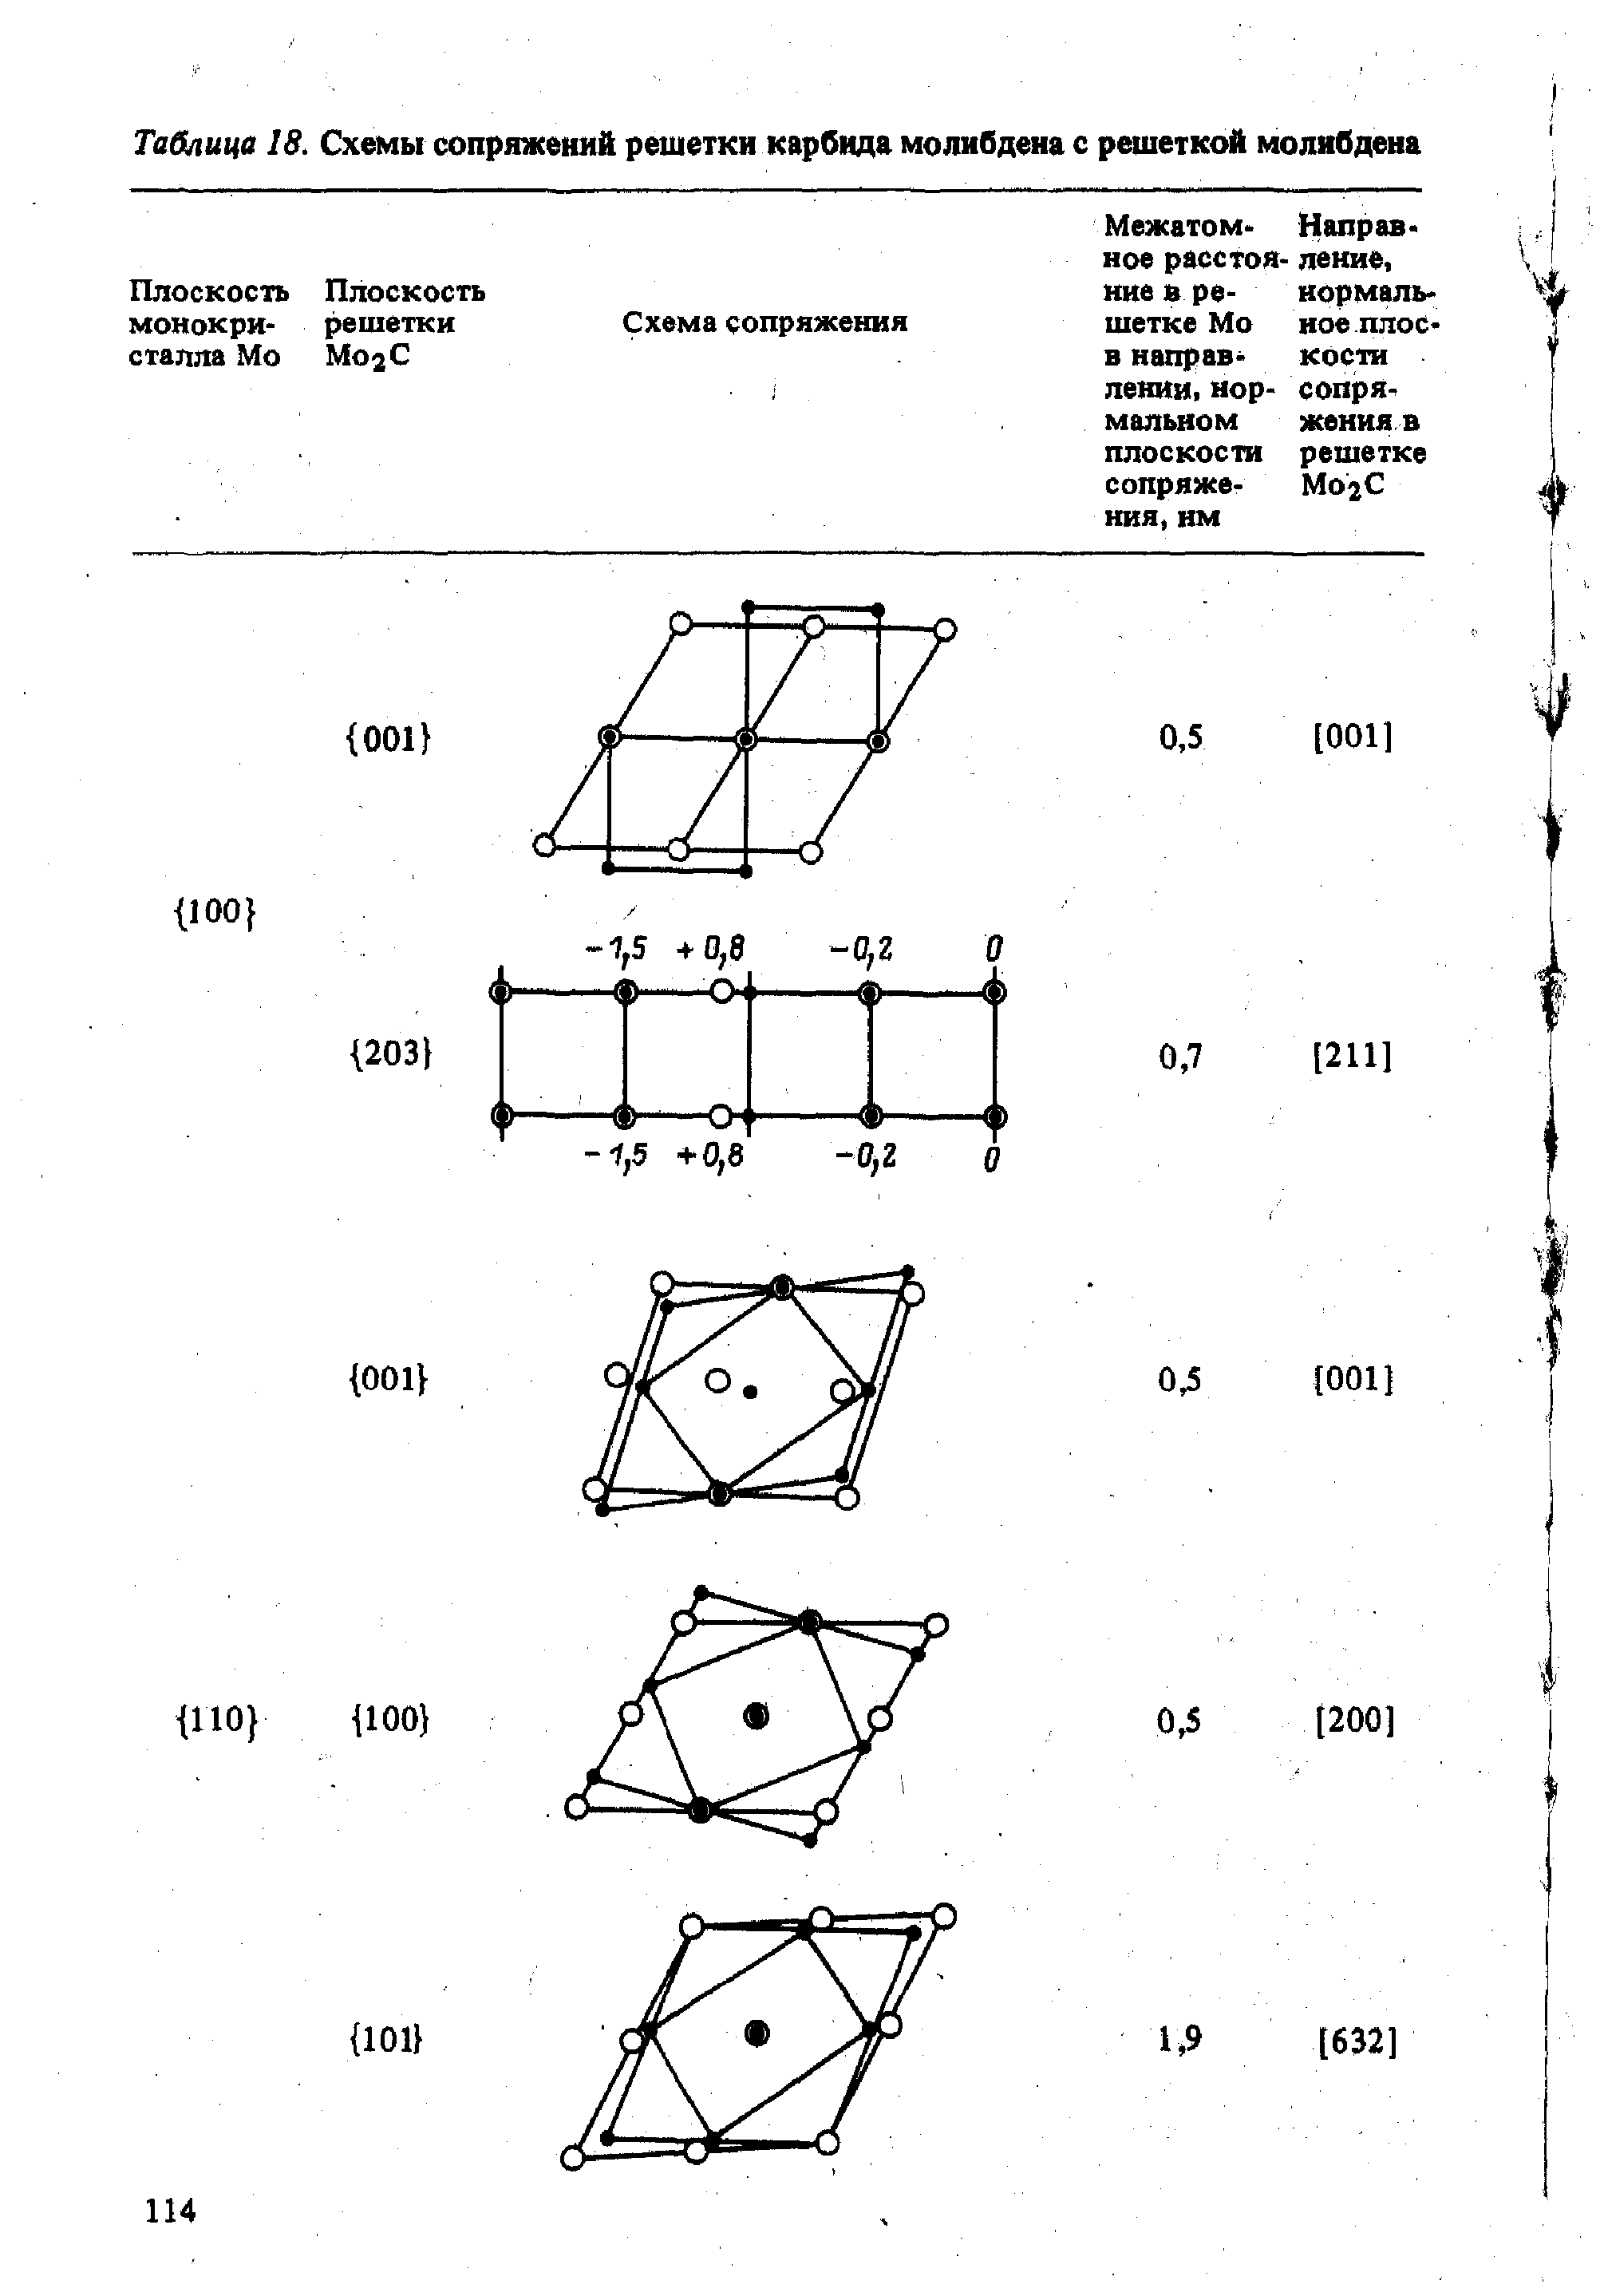 Таблица 18. Схемы сопряжений решетки карбида молибдена с решеткой молибдена
